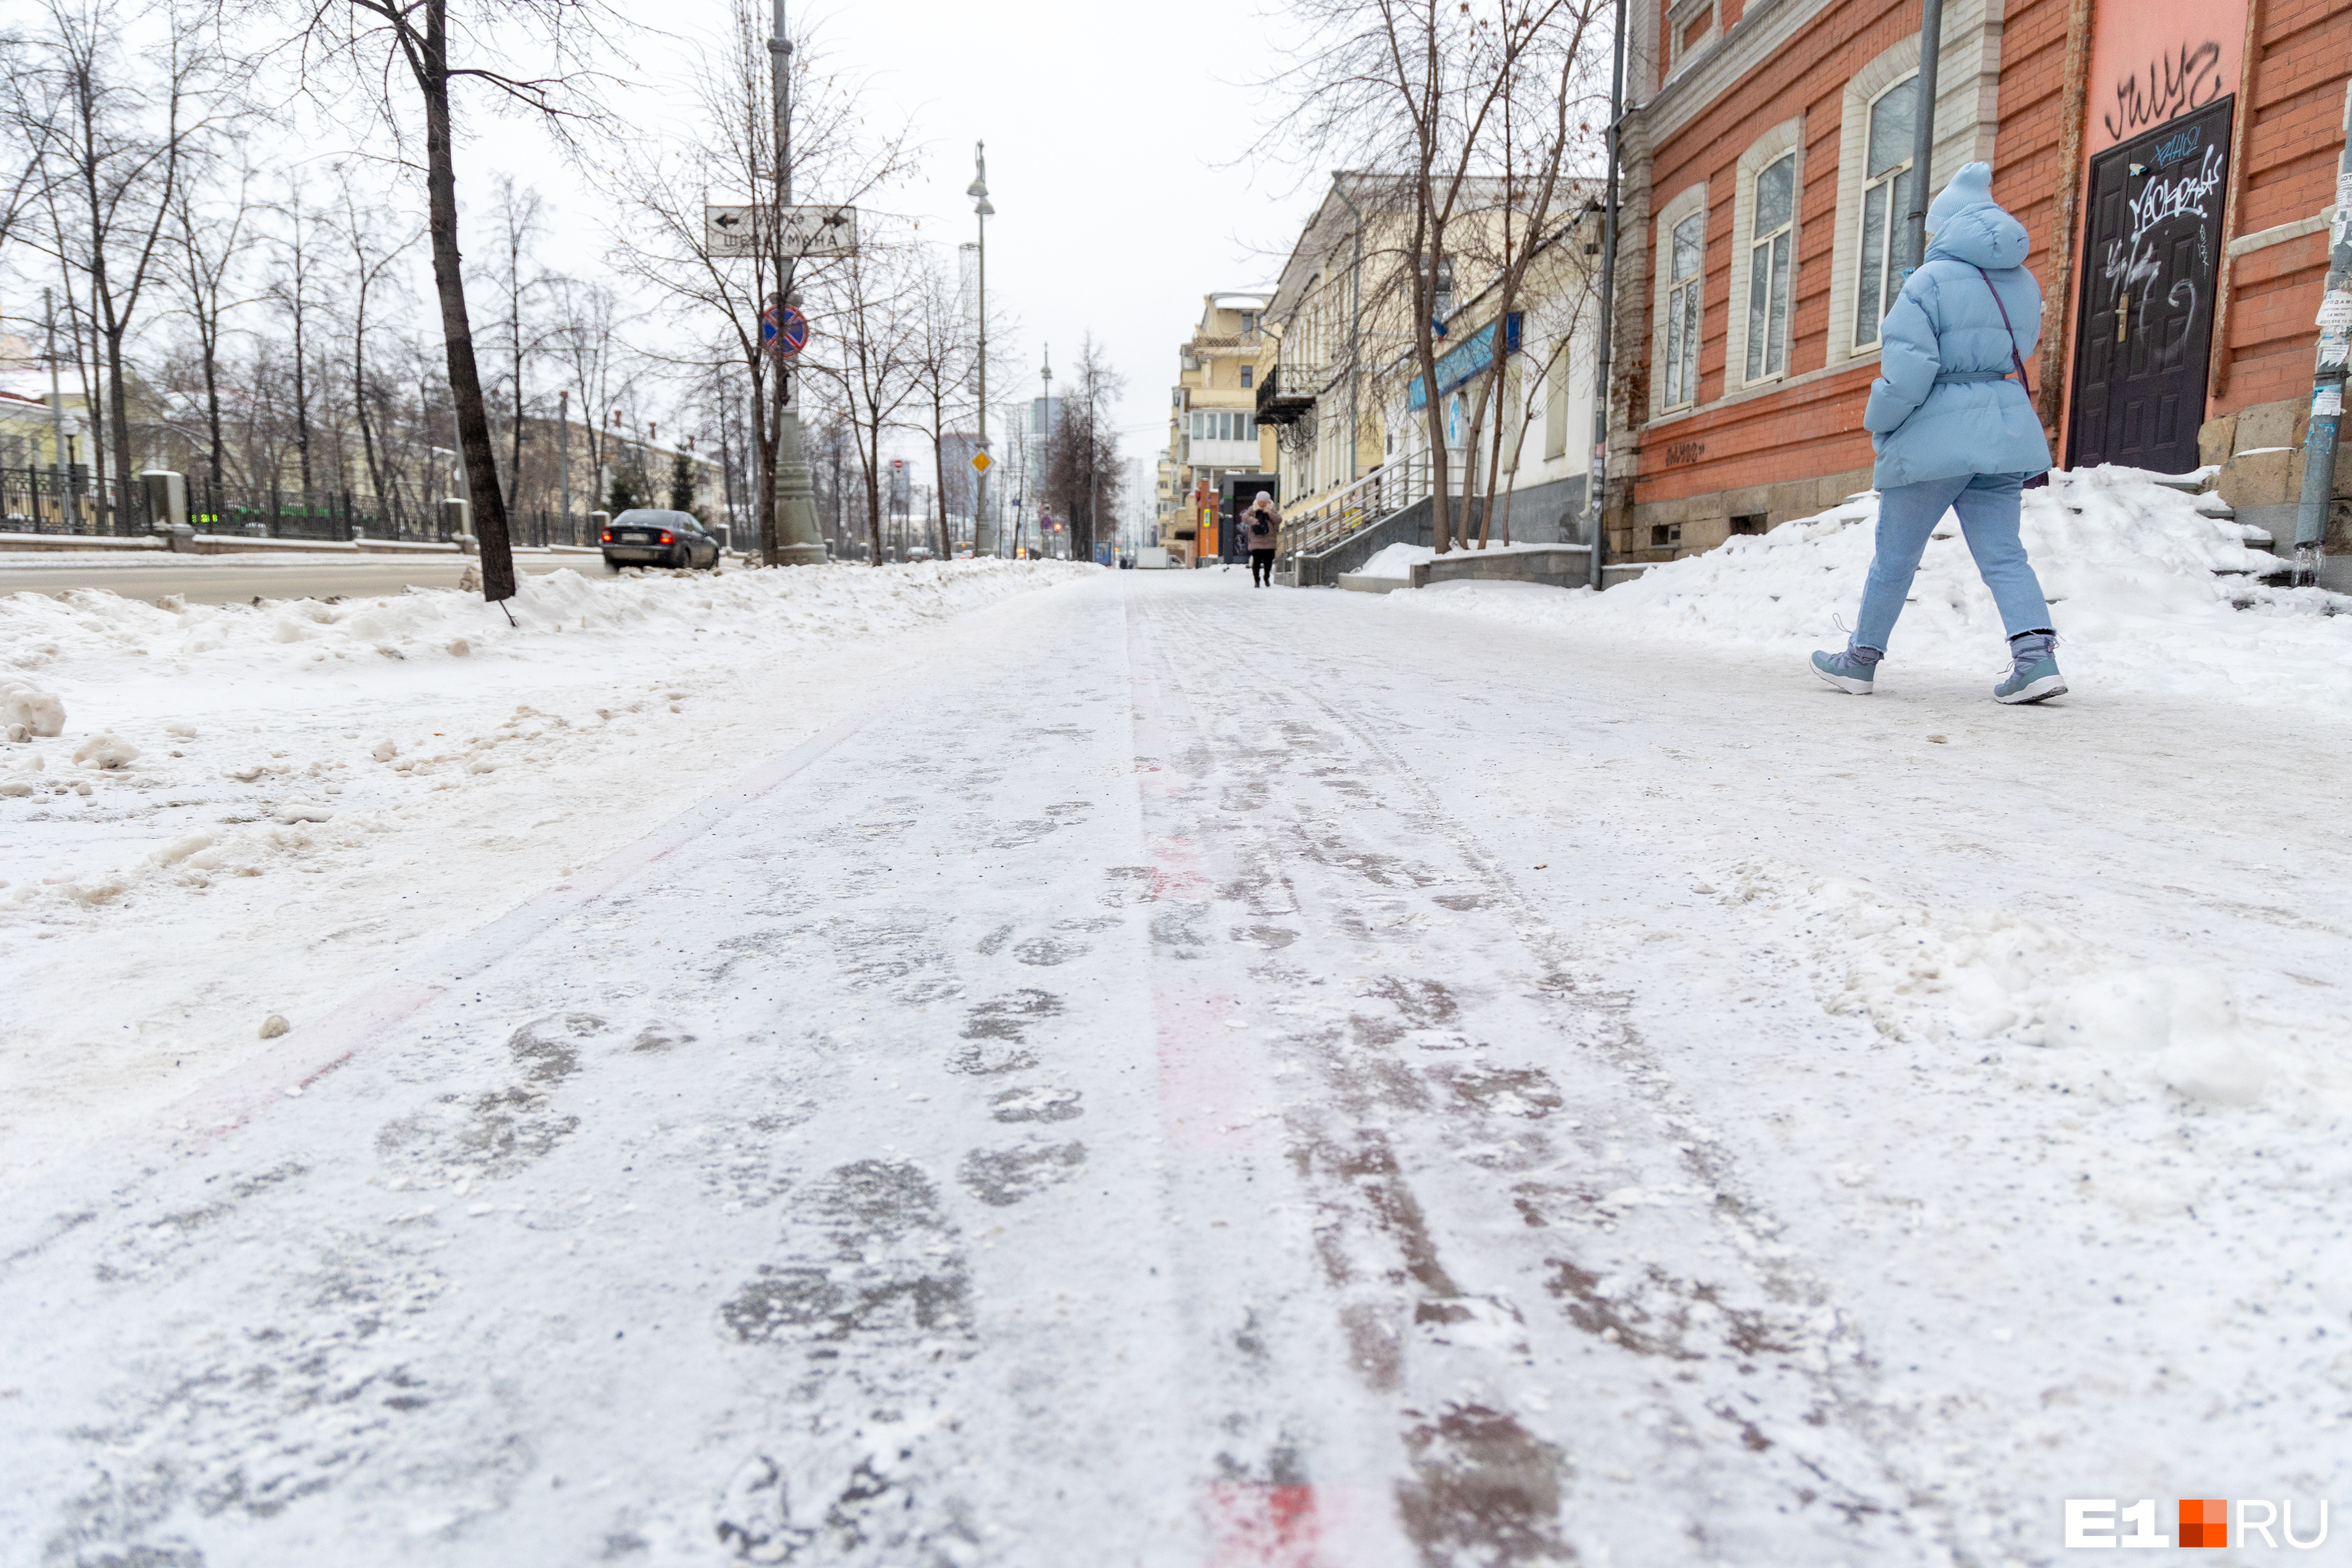 Из дома выходить опасно! Улицы в Екатеринбурге покрылись ледяной коркой